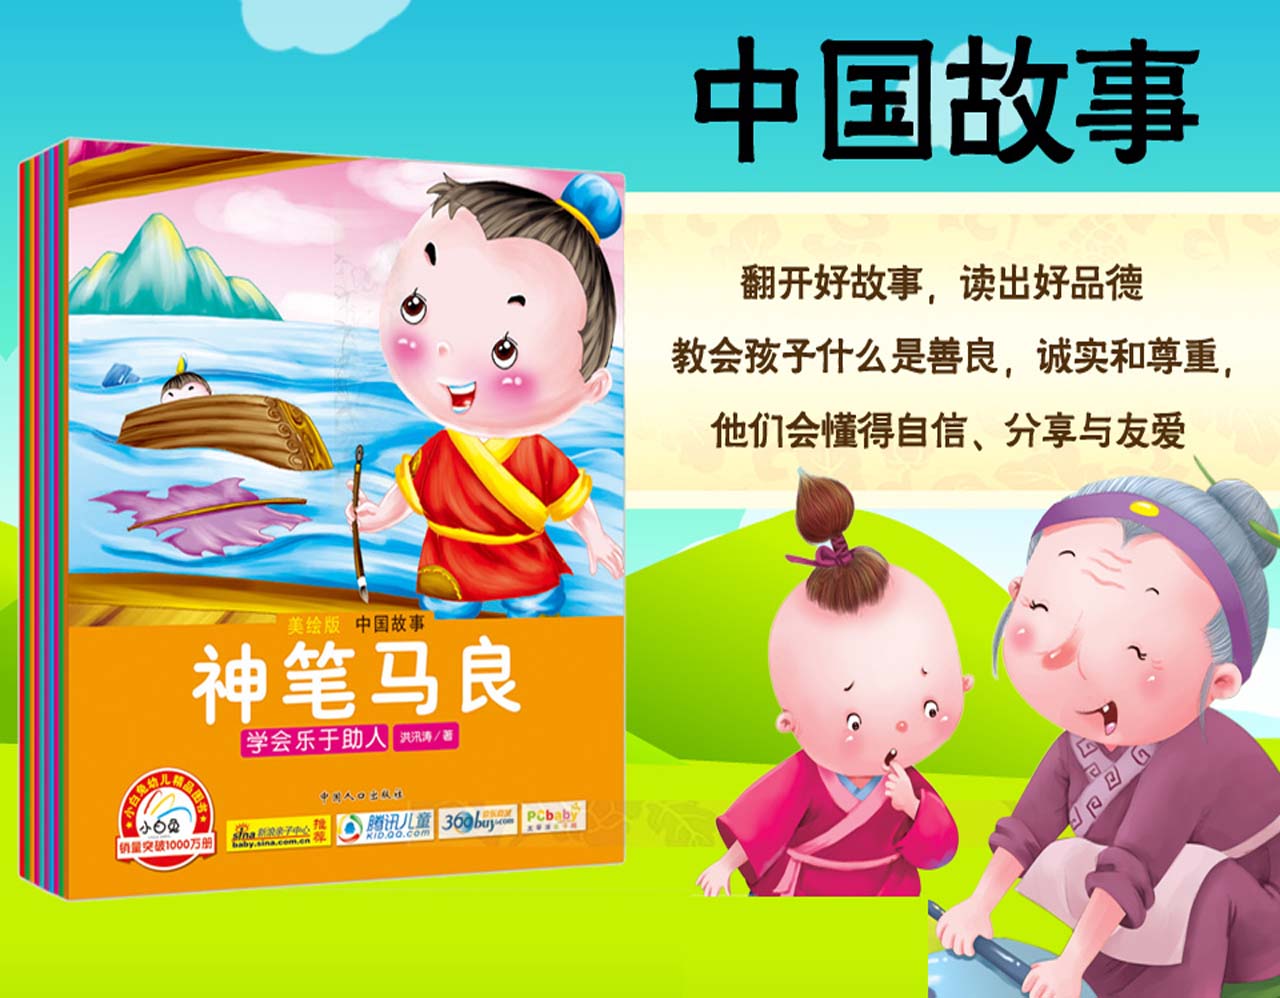 美绘版中国故事 宝宝第一套励志管理书 大图大